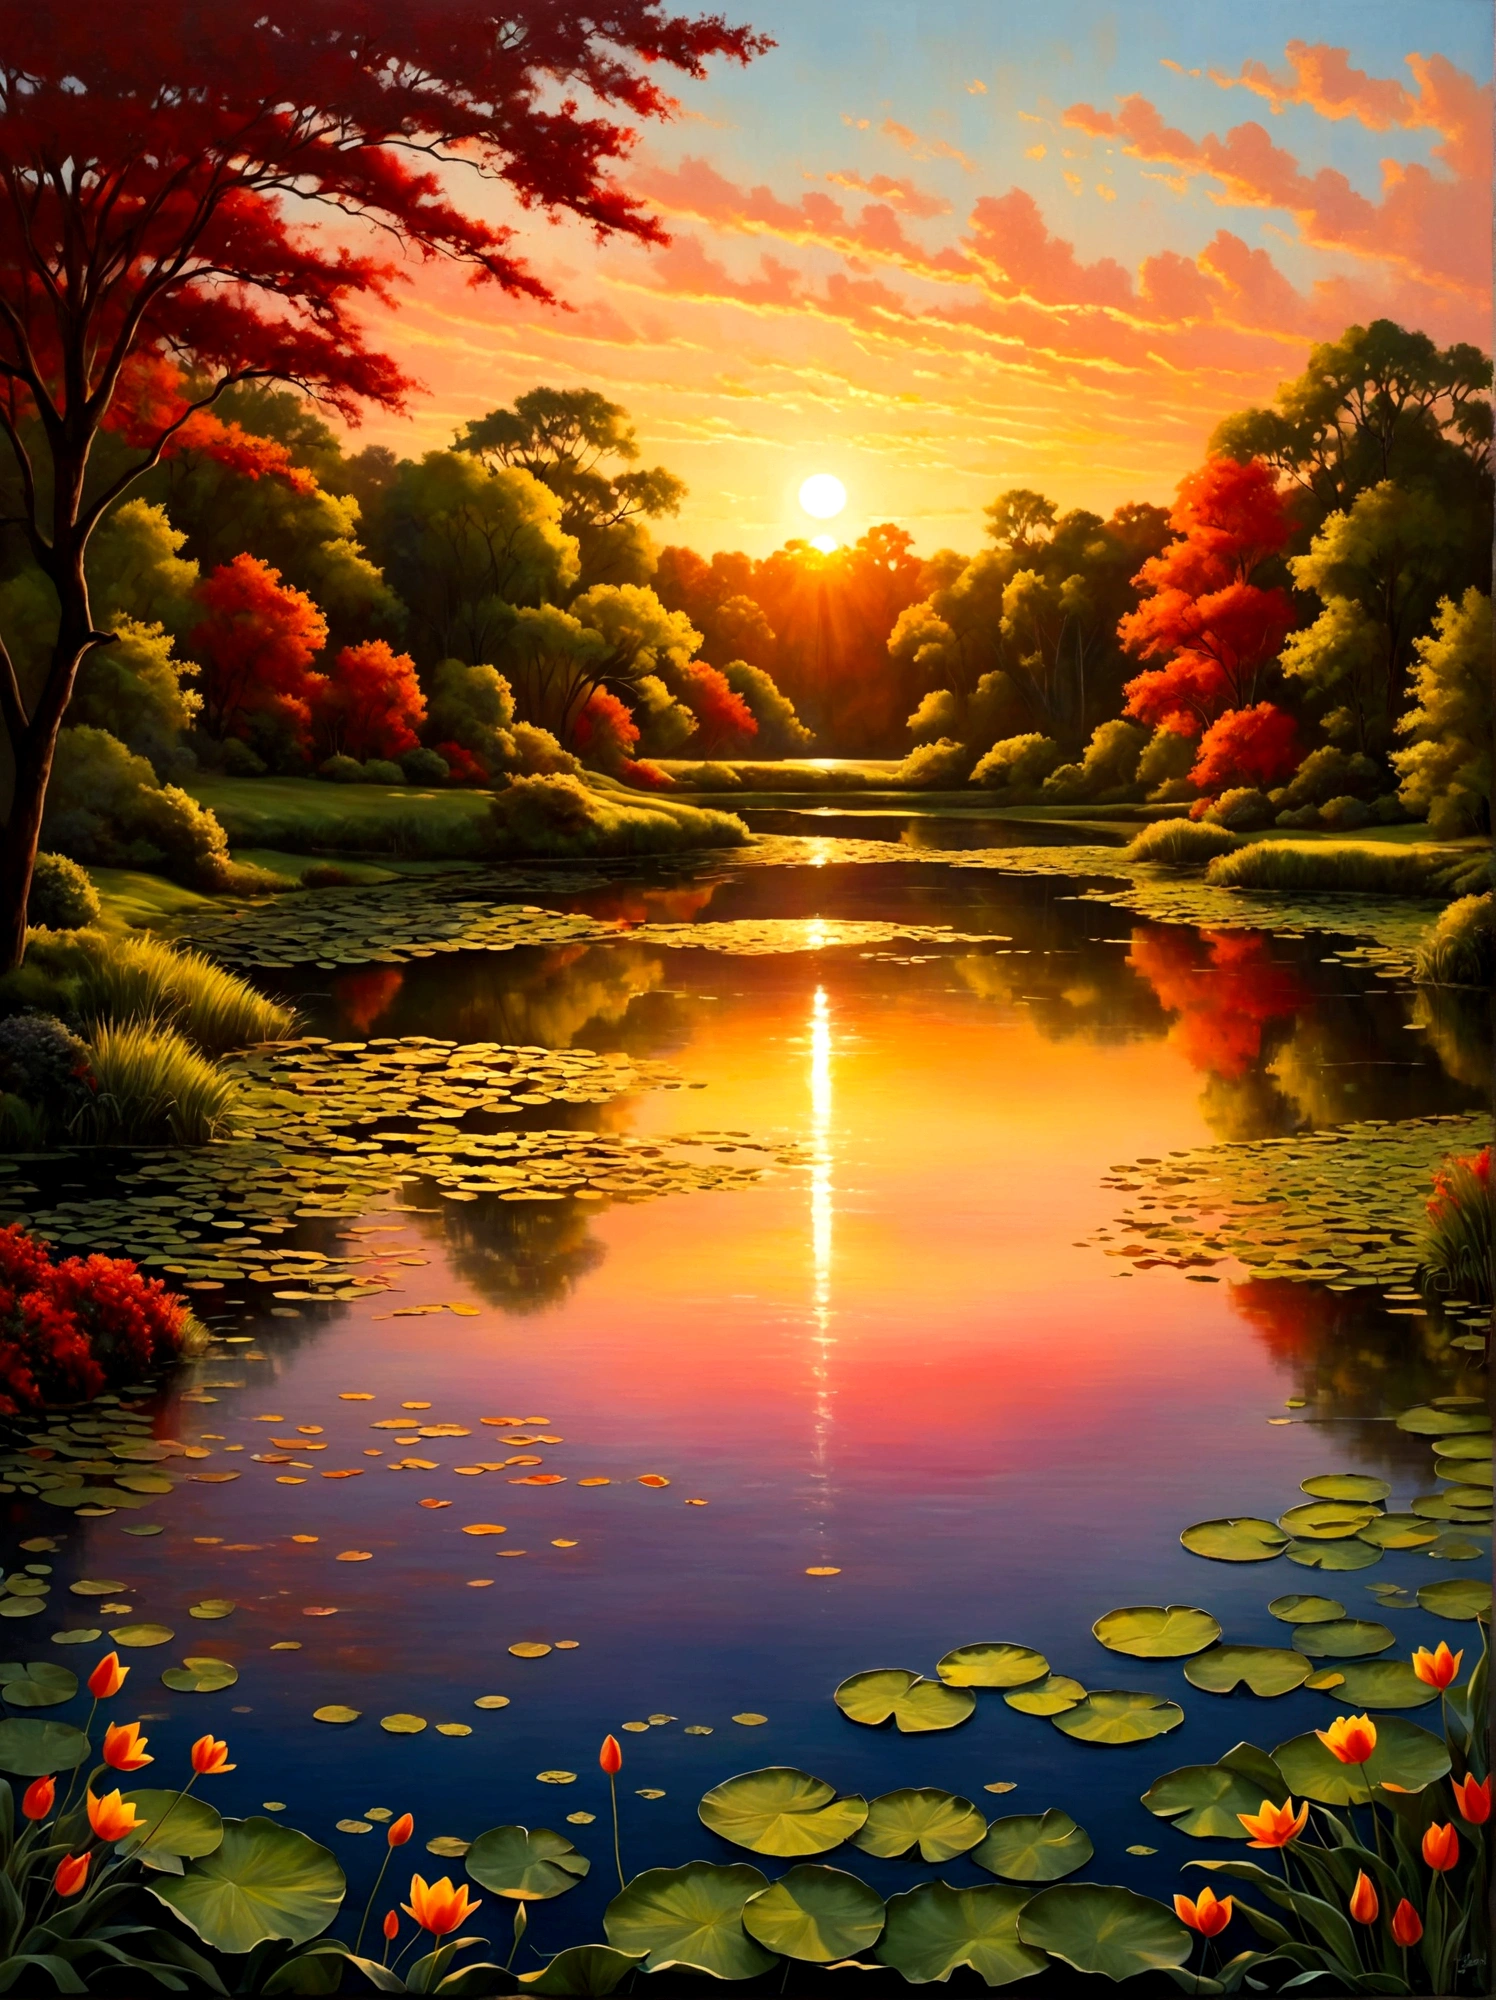 (日の出時刻:1.6)，空一面に広がる日の出の輝きを特徴とする絵のように美しい早朝の風景. 太陽の光が地平線からほんの少しだけ見え始めている, 鮮やかなオレンジ色を放つ, 赤, 黄色, ピンク. 前景に, 静かな湖が空の素晴らしい色を映し出す. その穏やかな表面はほとんど乱されていない, シーンに魅力を加えるわずかな波紋を除いて. 湖の周りには緑豊かな木々が生い茂っています, 暗くなりつつあるためまだ影がかかっているが、夜明けの活気ある輝きを捉え始めている. この画像は夜から夜明けへの美しい移り変わりを捉えている, 視点は広角ビューで、自然の要素に満ちた息を呑むような風景の広大な範囲を強調しています。, 画像は光と影を効果的に使用してドラマチックさと壮大さを感じさせるものでなければならない。.